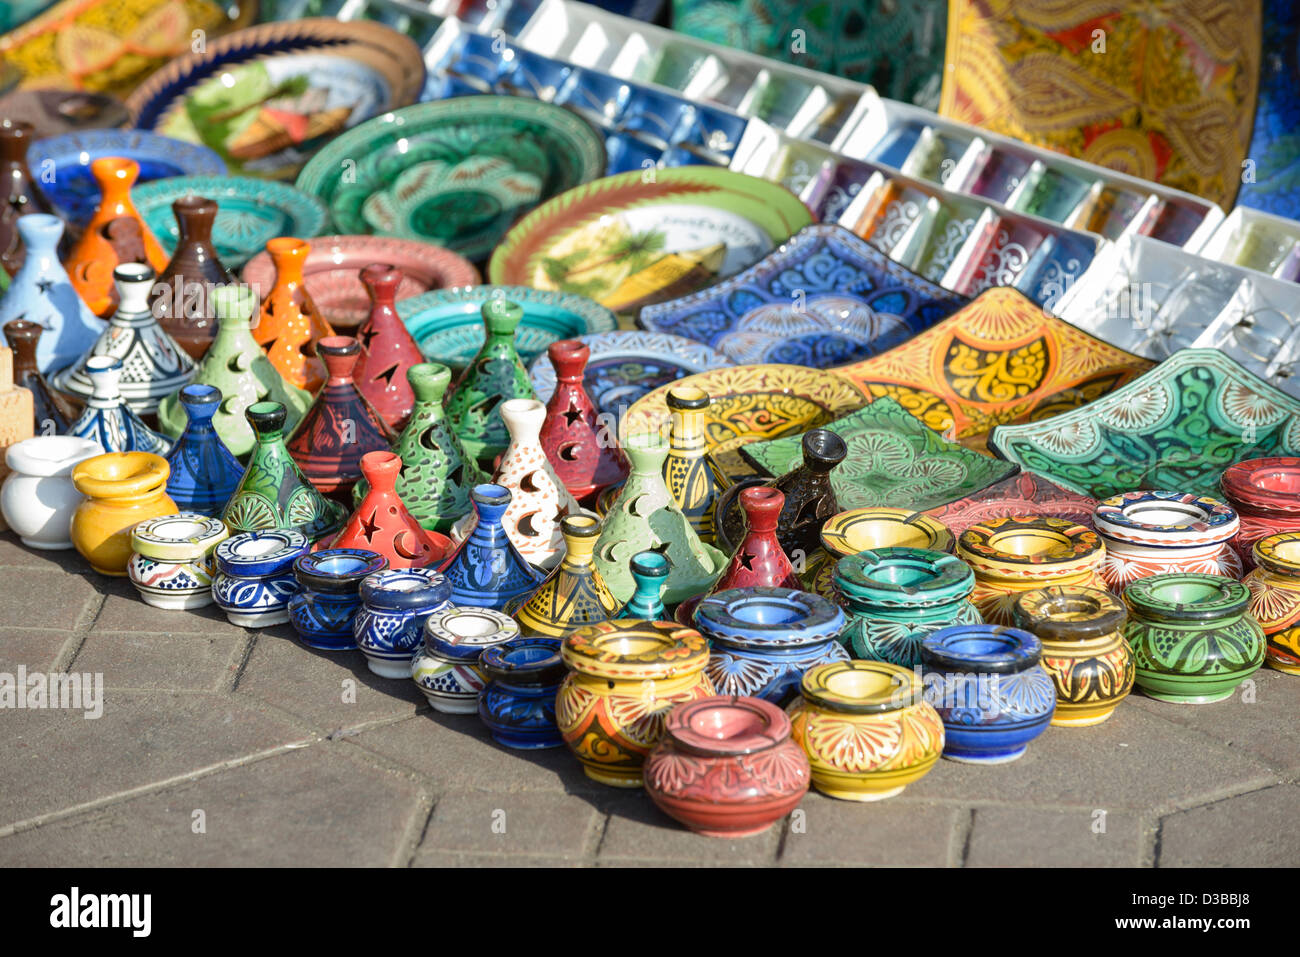 Gli ingredienti di base di una tagine , posacenere, piastre e altri souvenir marocchini sul display nel souk di Marrakech, Marocco. Foto Stock